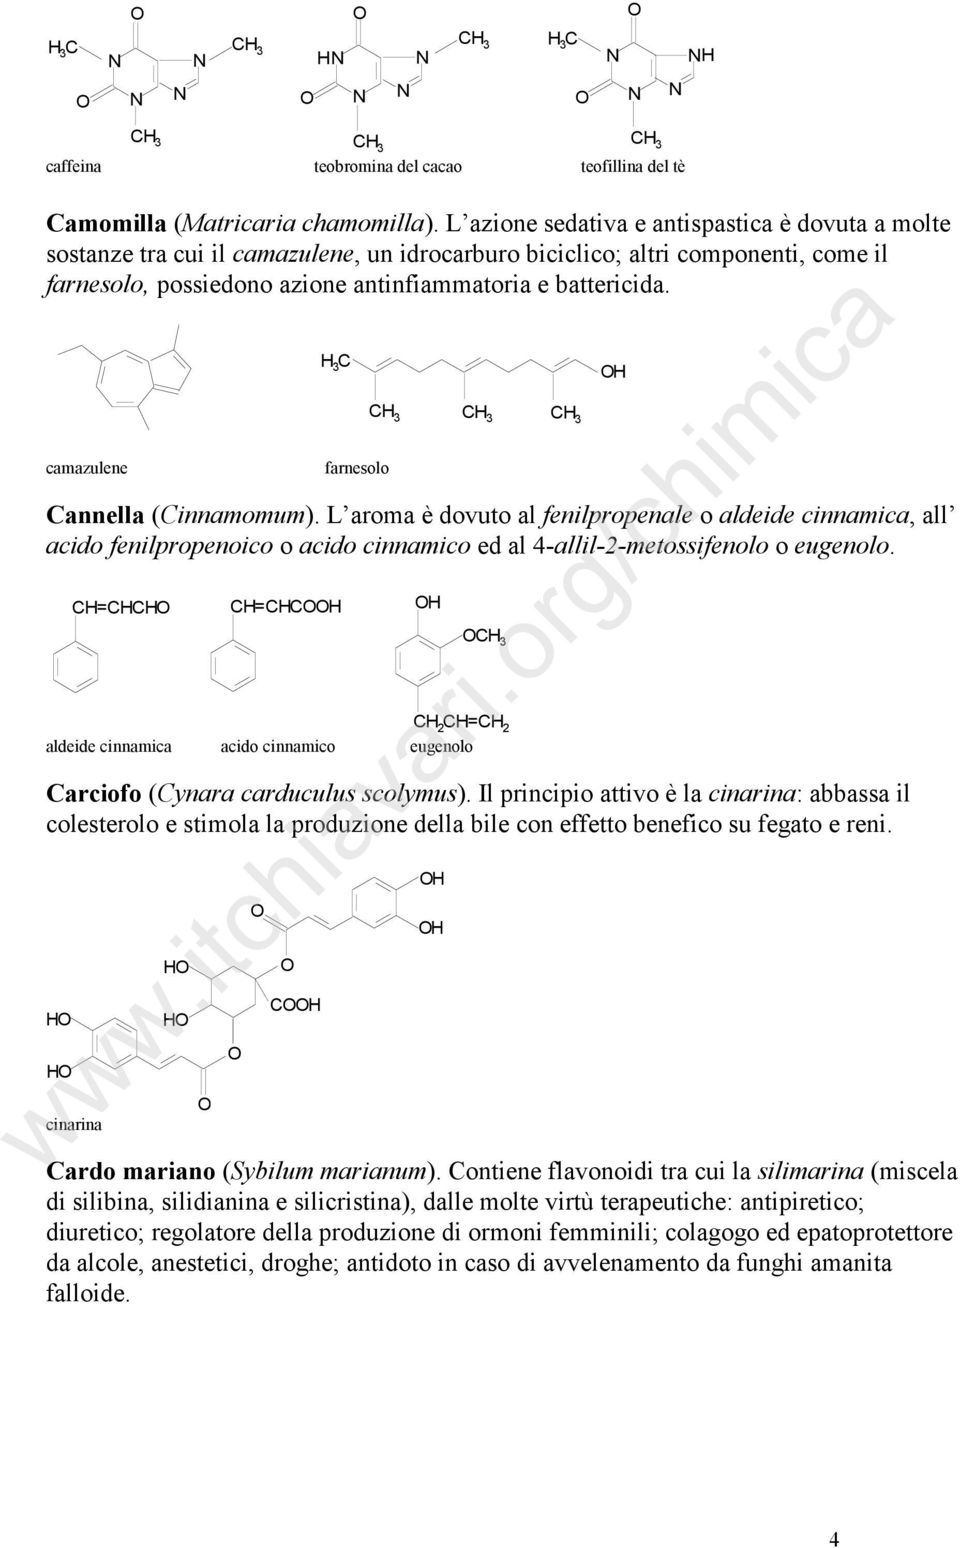 camazulene 3 C farnesolo Cannella (Cinnamomum). L aroma è dovuto al fenilpropenale o aldeide cinnamica, all acido fenilpropenoico o acido cinnamico ed al 4-allil-2-metossifenolo o eugenolo.